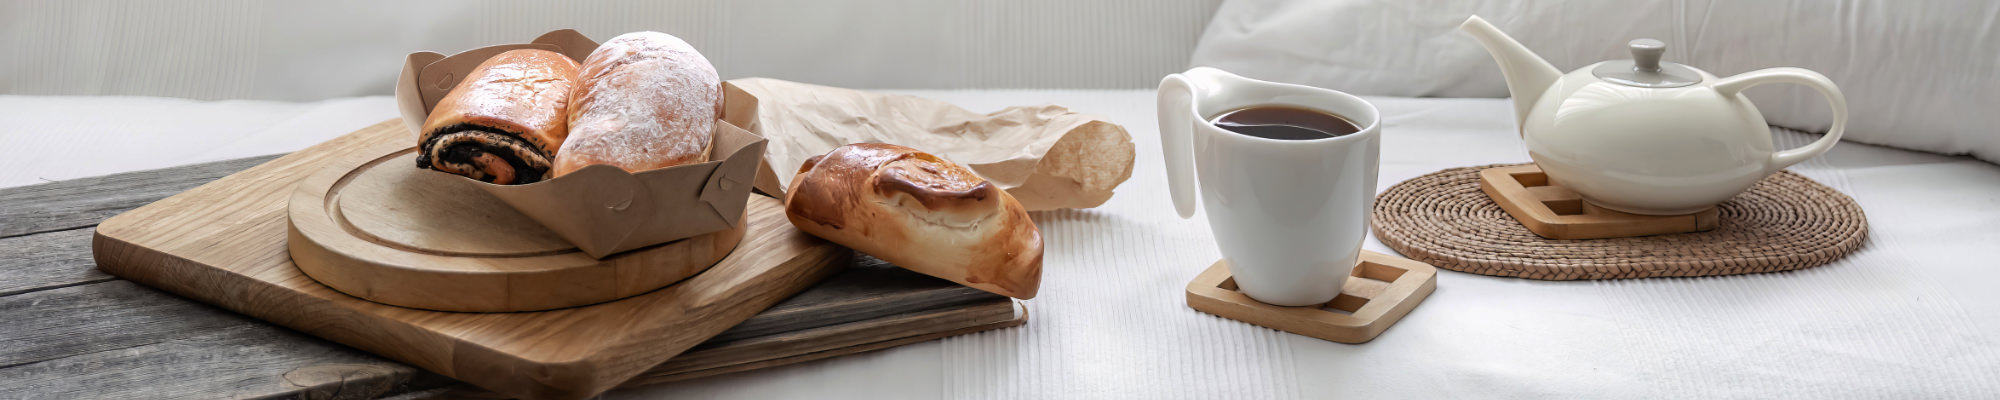 Koffie en broodjes als lekker ontbijt in een gastenkamer